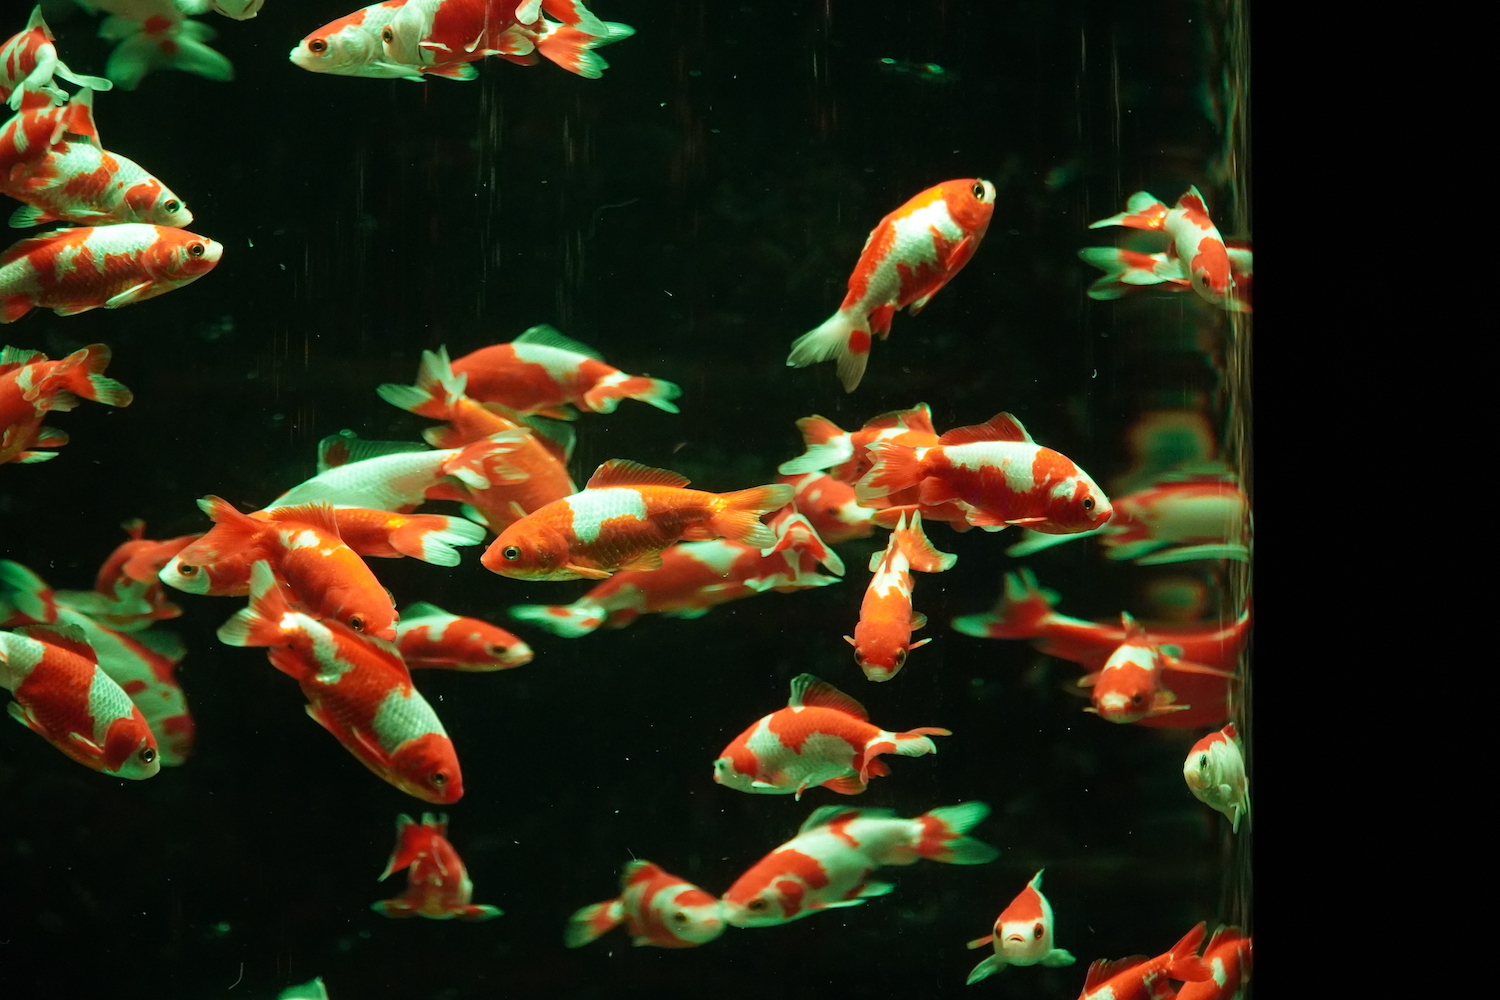 アートアクアリウム美術館 Ginza 銀座三越にオープン 光と音で魅せる優雅な金魚アート Spice エンタメ特化型情報メディア スパイス